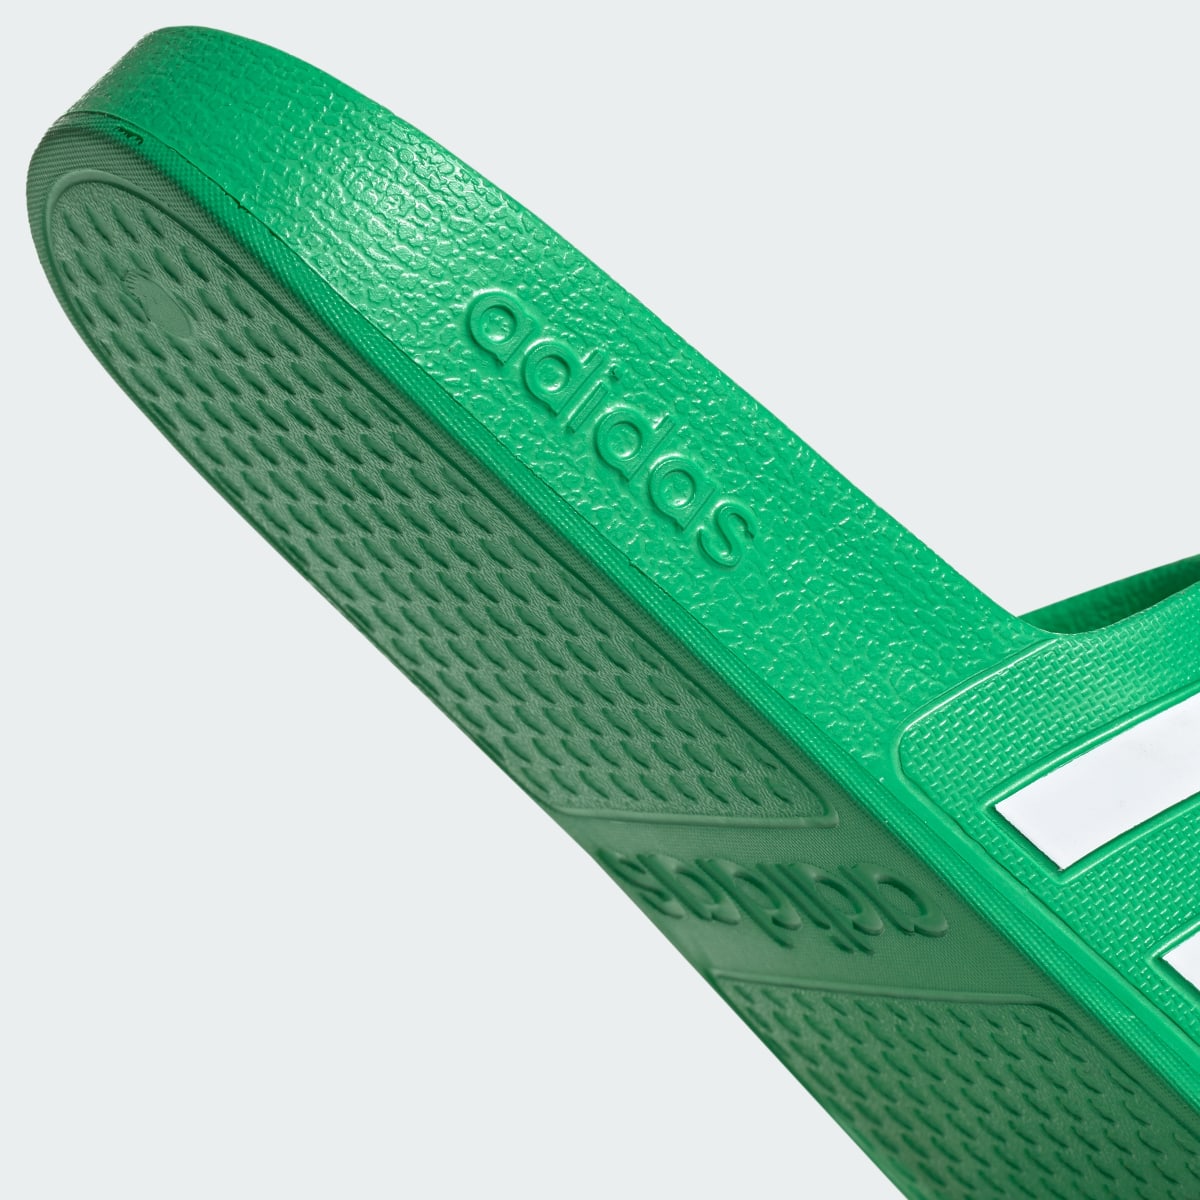 Adidas Adilette Aqua Slides. 10